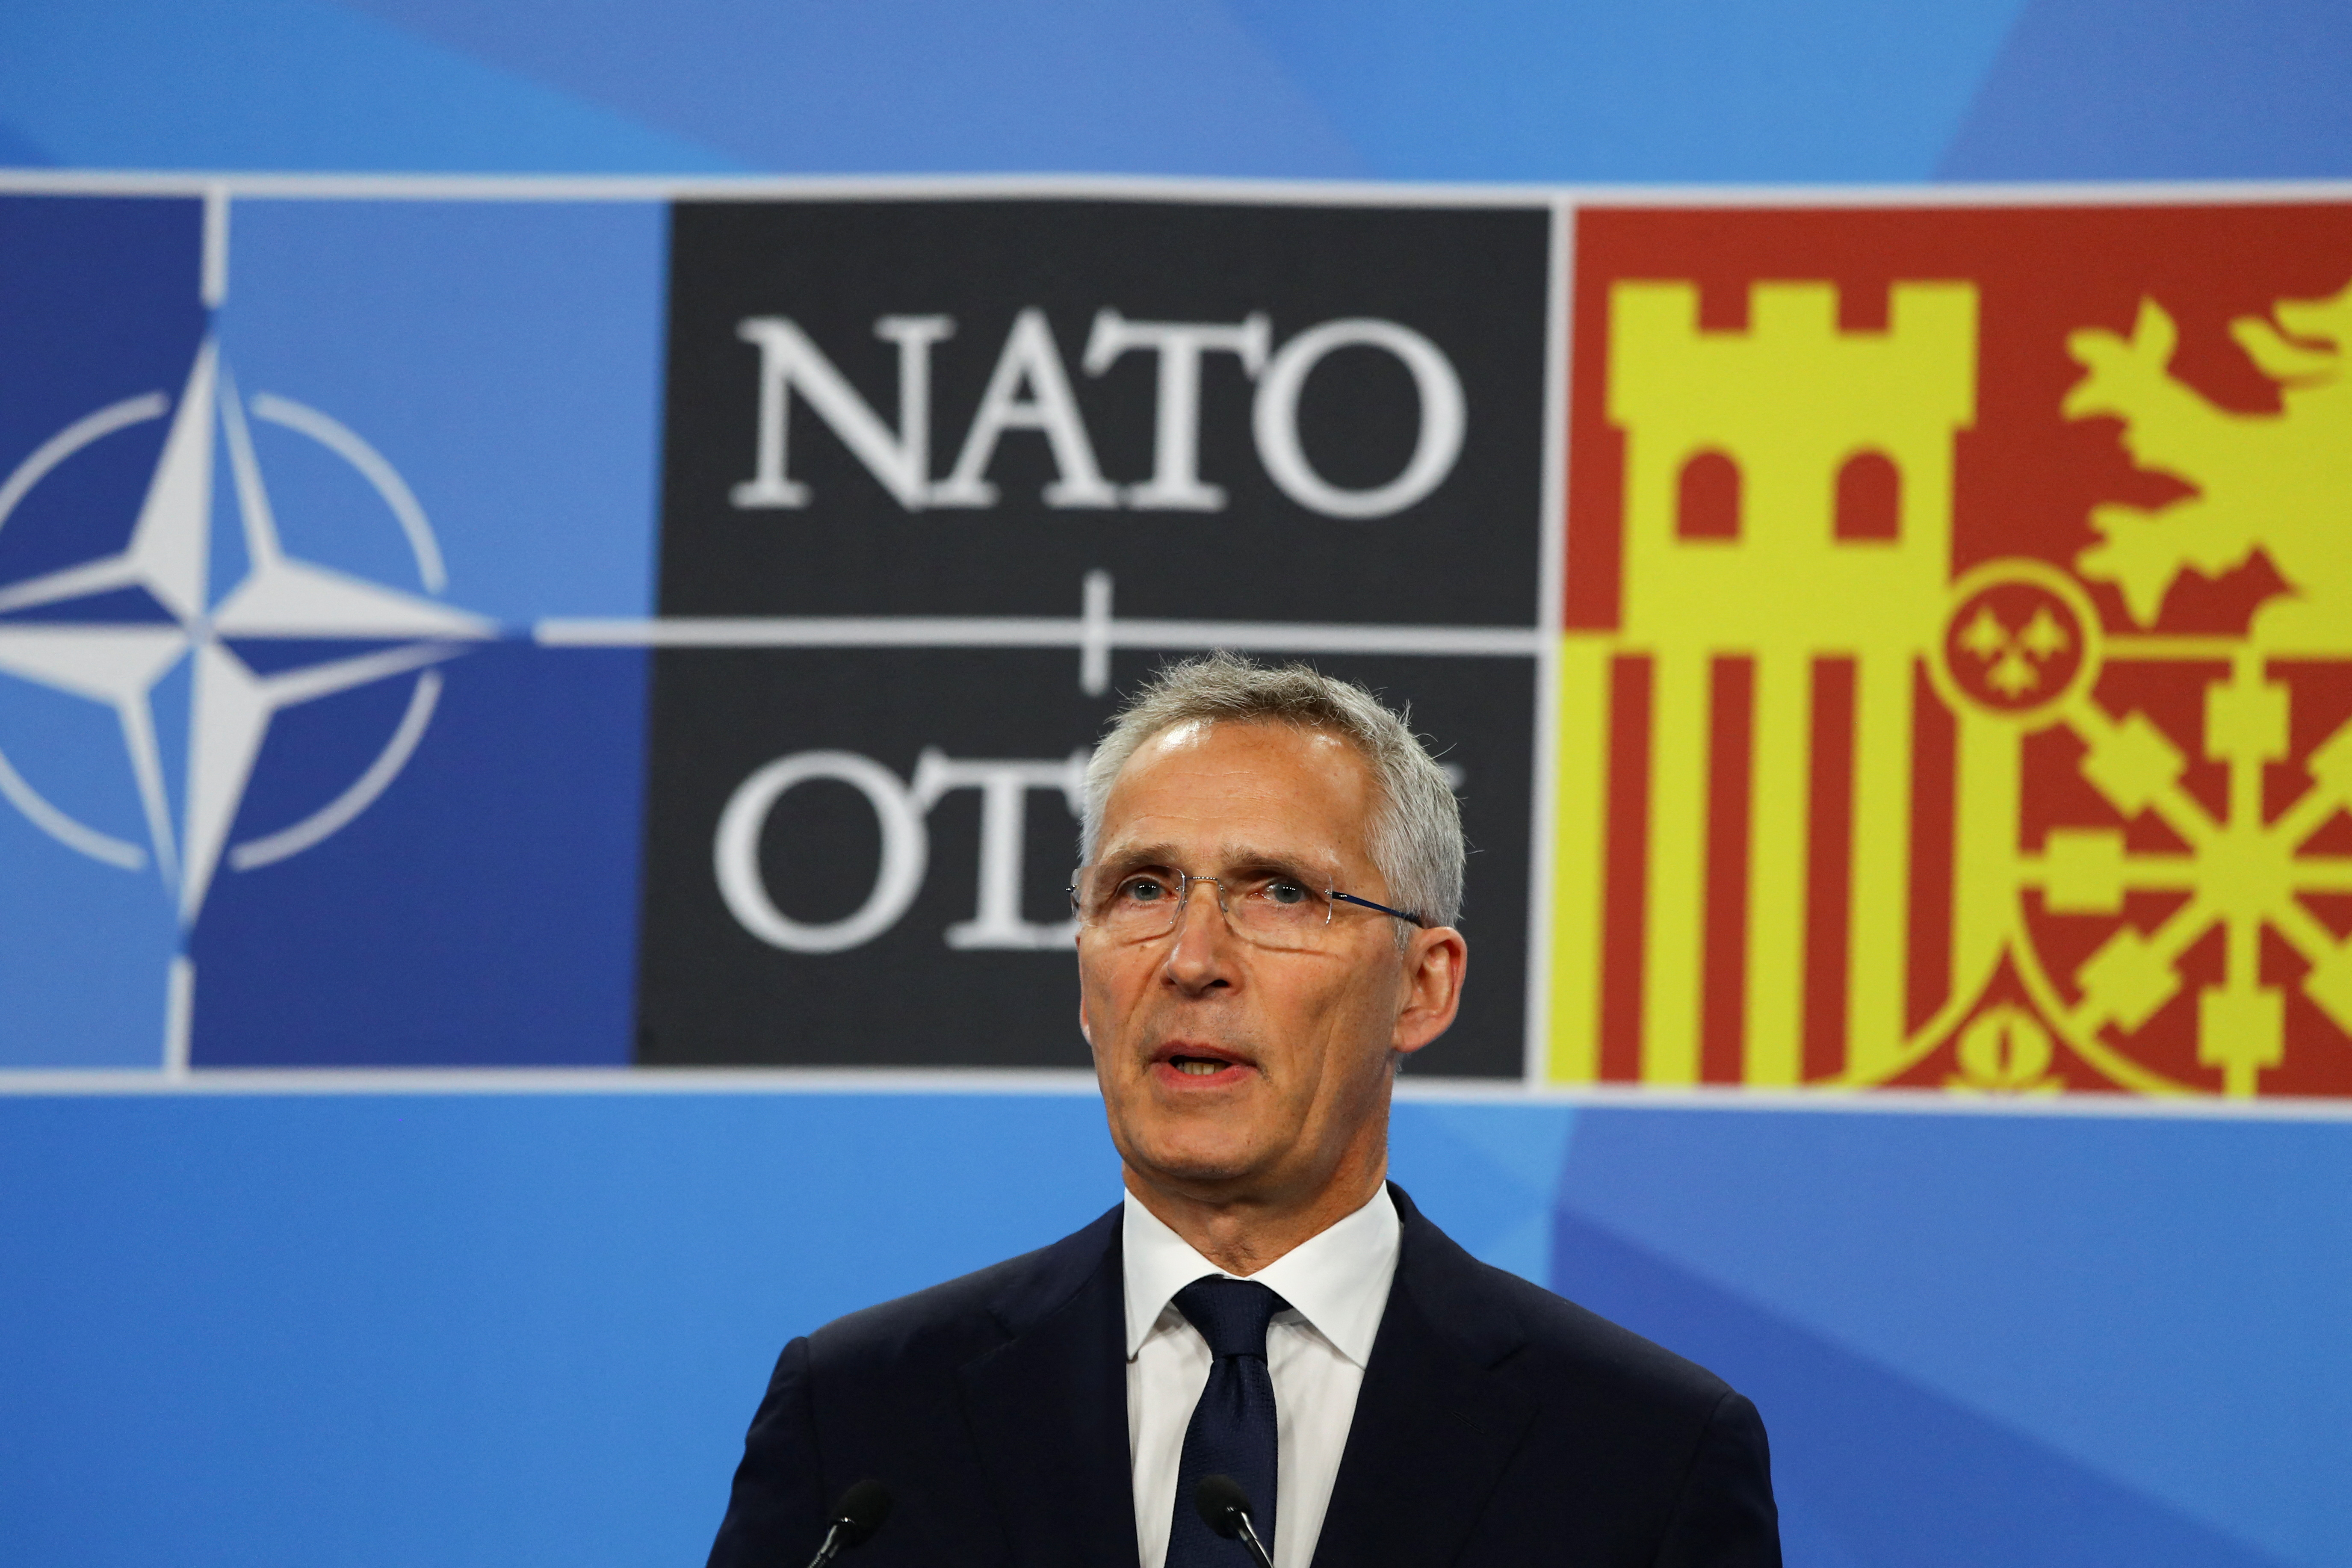 La OTAN respondió a las amenazas de Putin por la integración de Suecia y Finlandia: “Estamos preparados para todas las eventualidades”